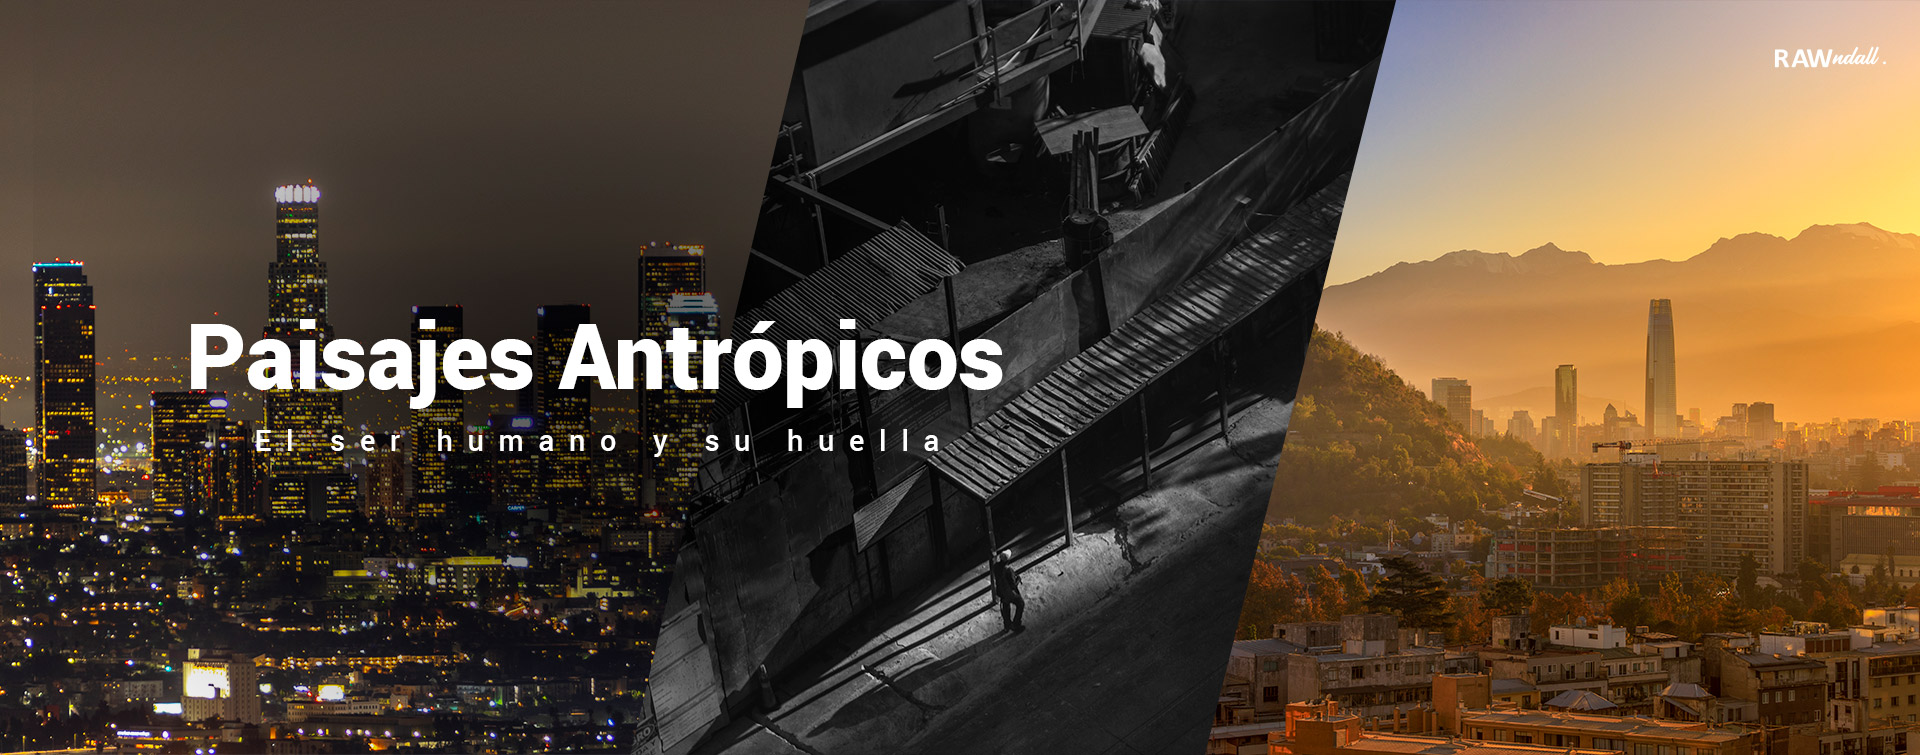 Conjunto de paisajes antropicos, en la primera foto, la ciudad de los Angeles, en la segunda una fotografía en blanco y negro de Panama city y la tercera una bella tarde en Santiago, Chile.